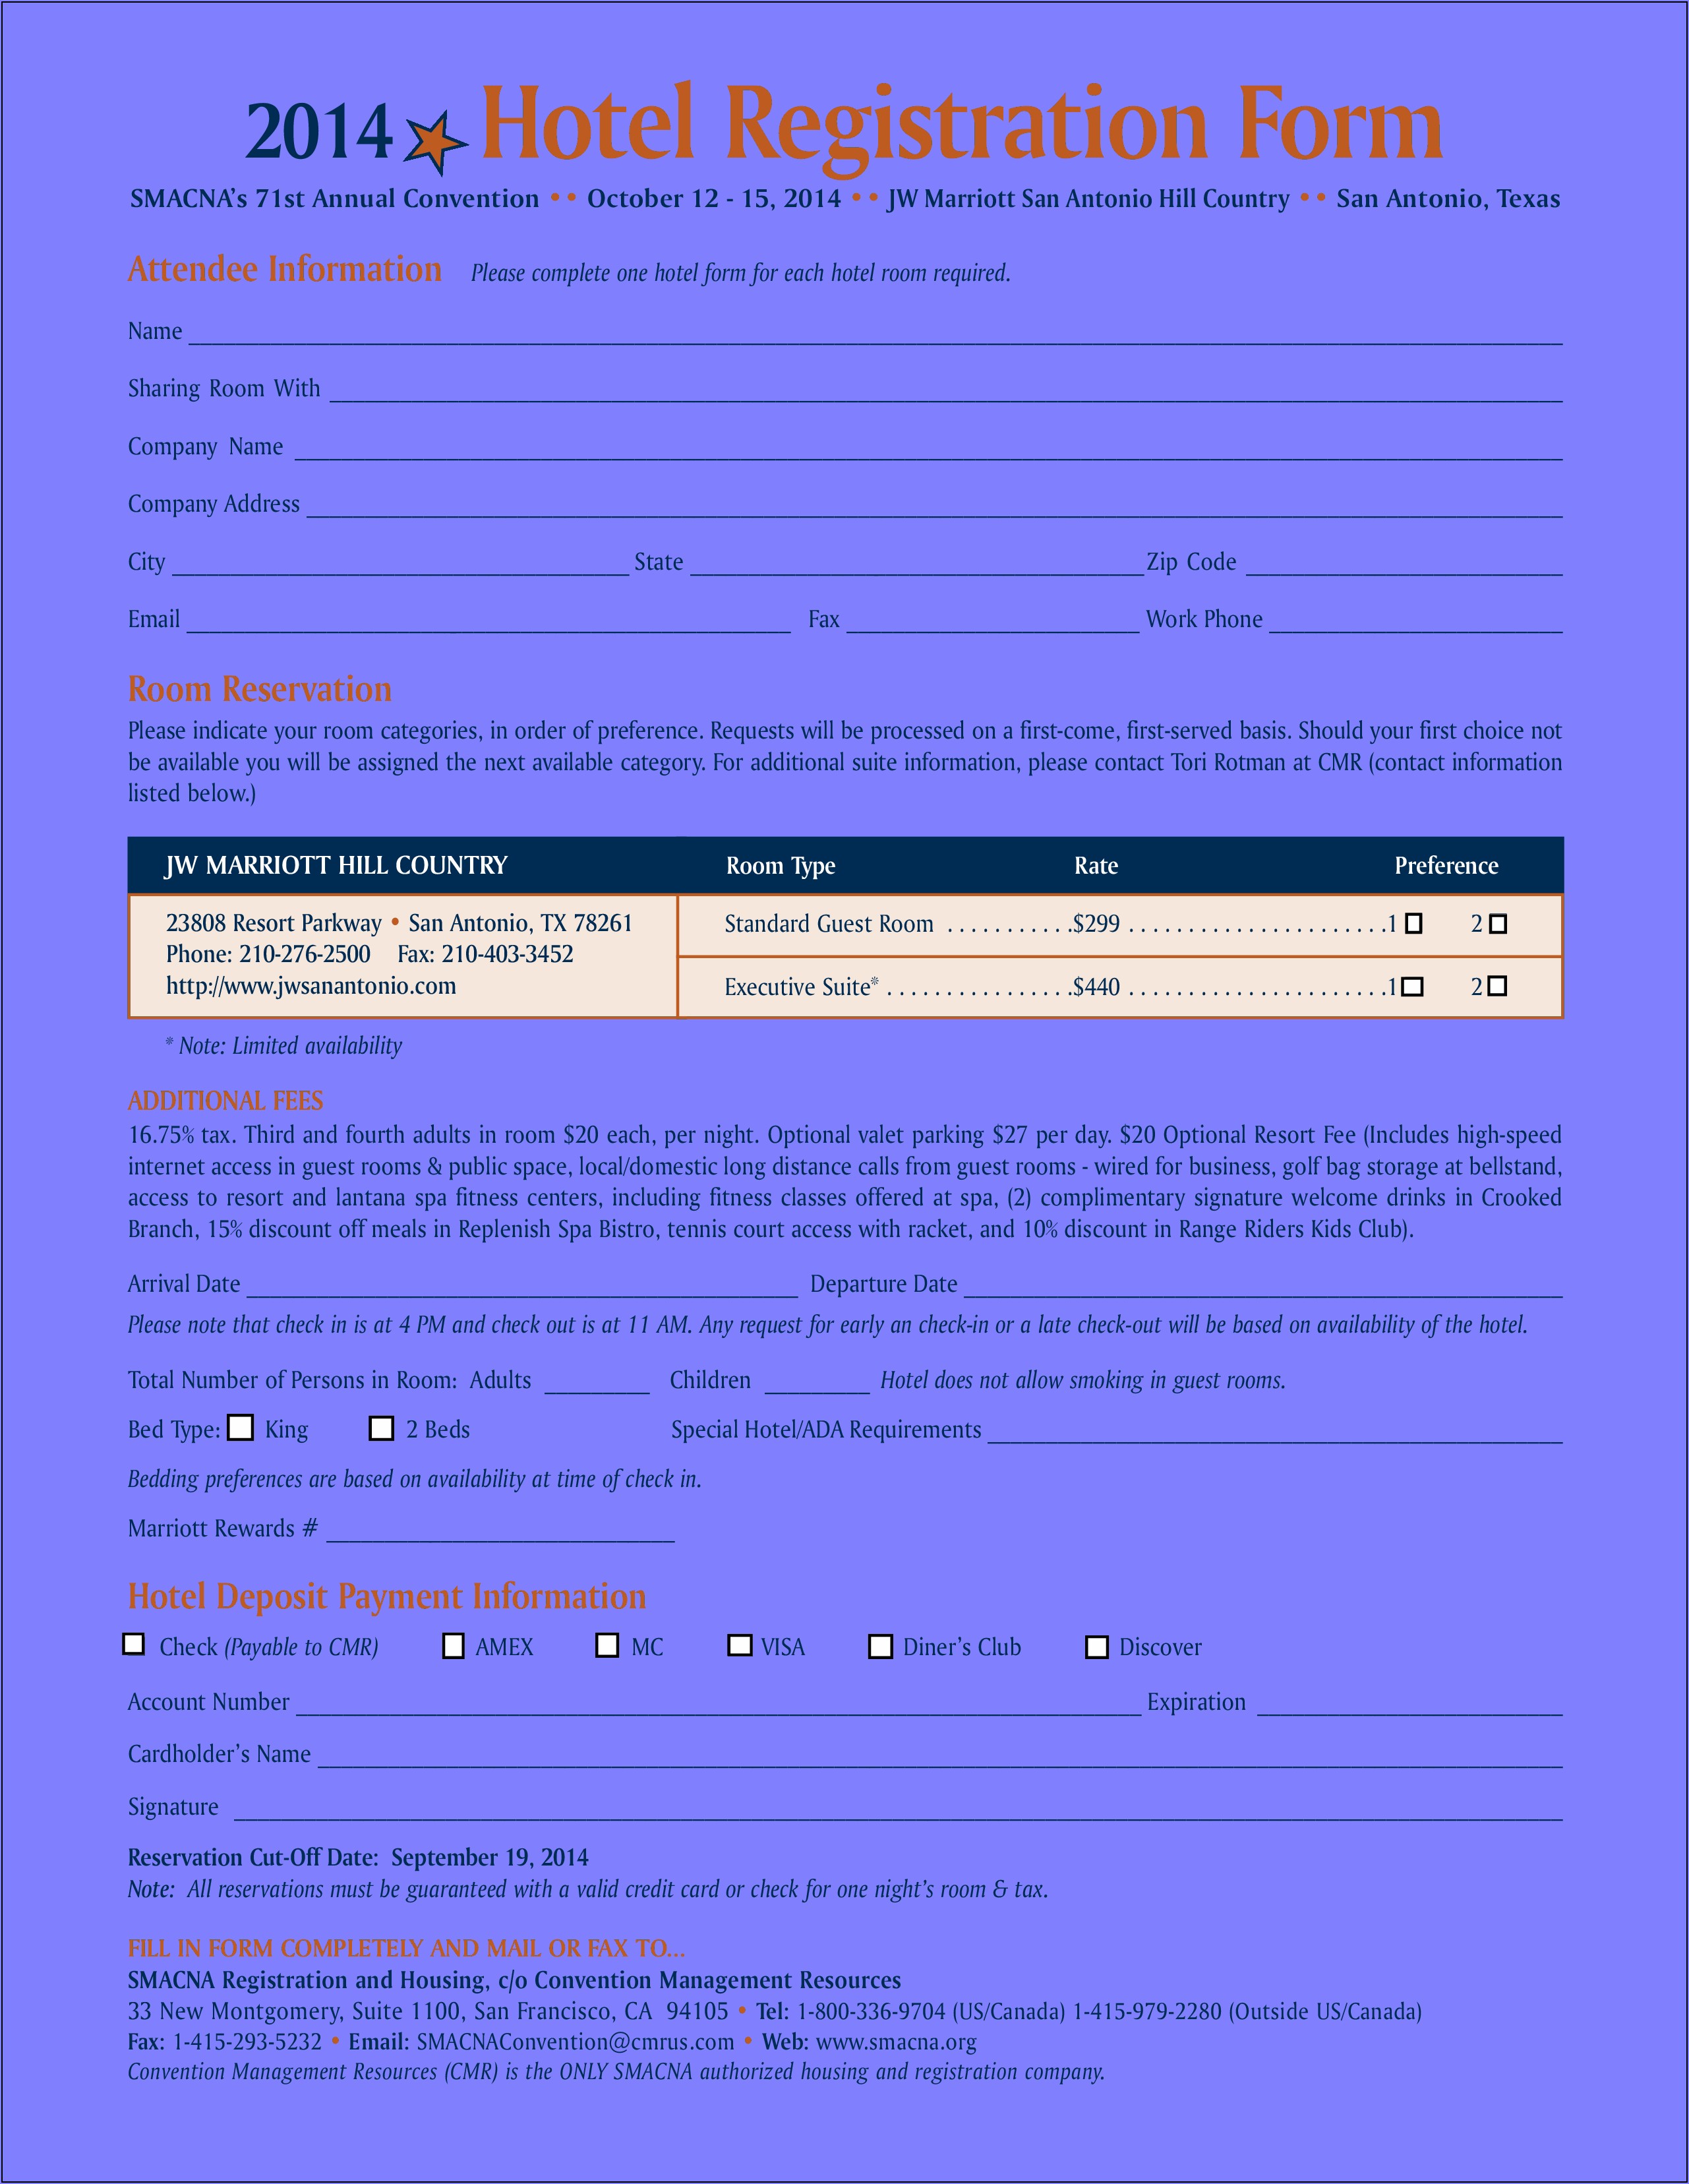 Hotel Registration Form Sample Pdf